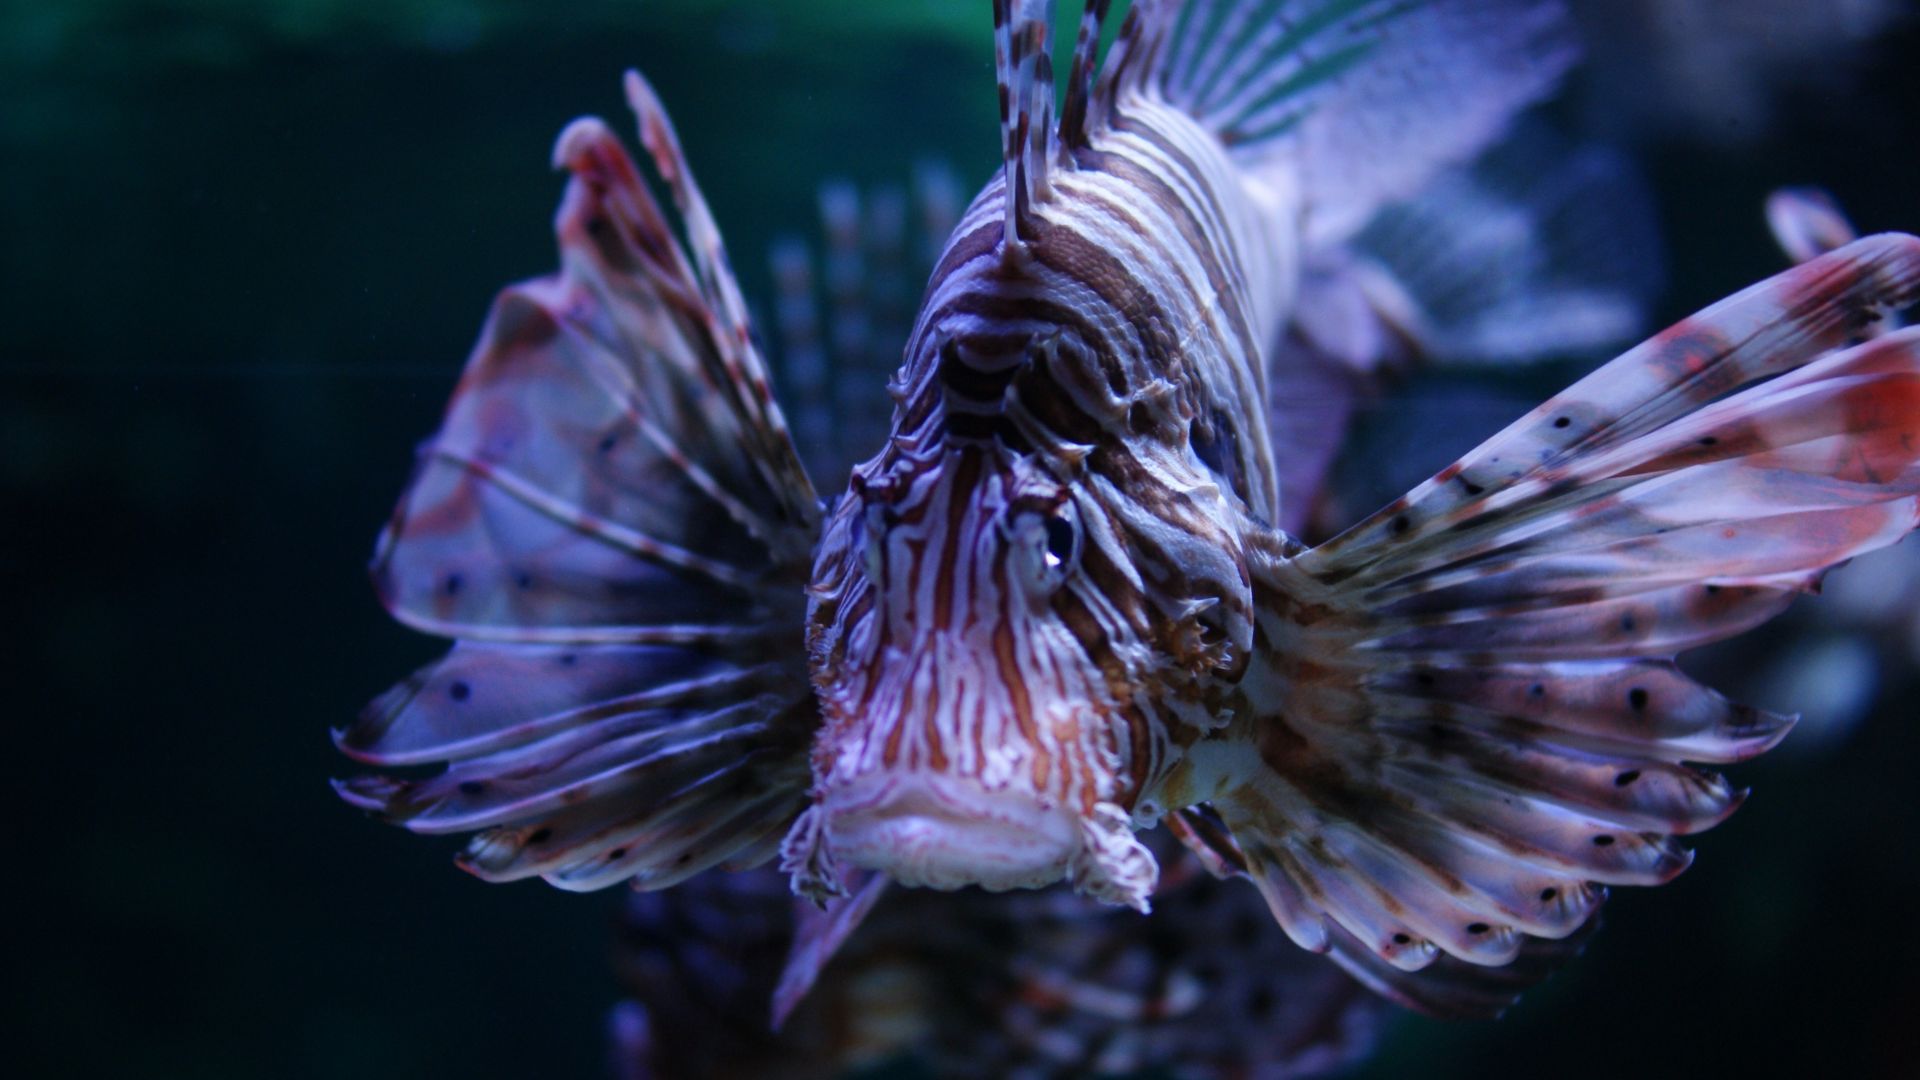 Wallpaper Lionfish in aquarium, close up